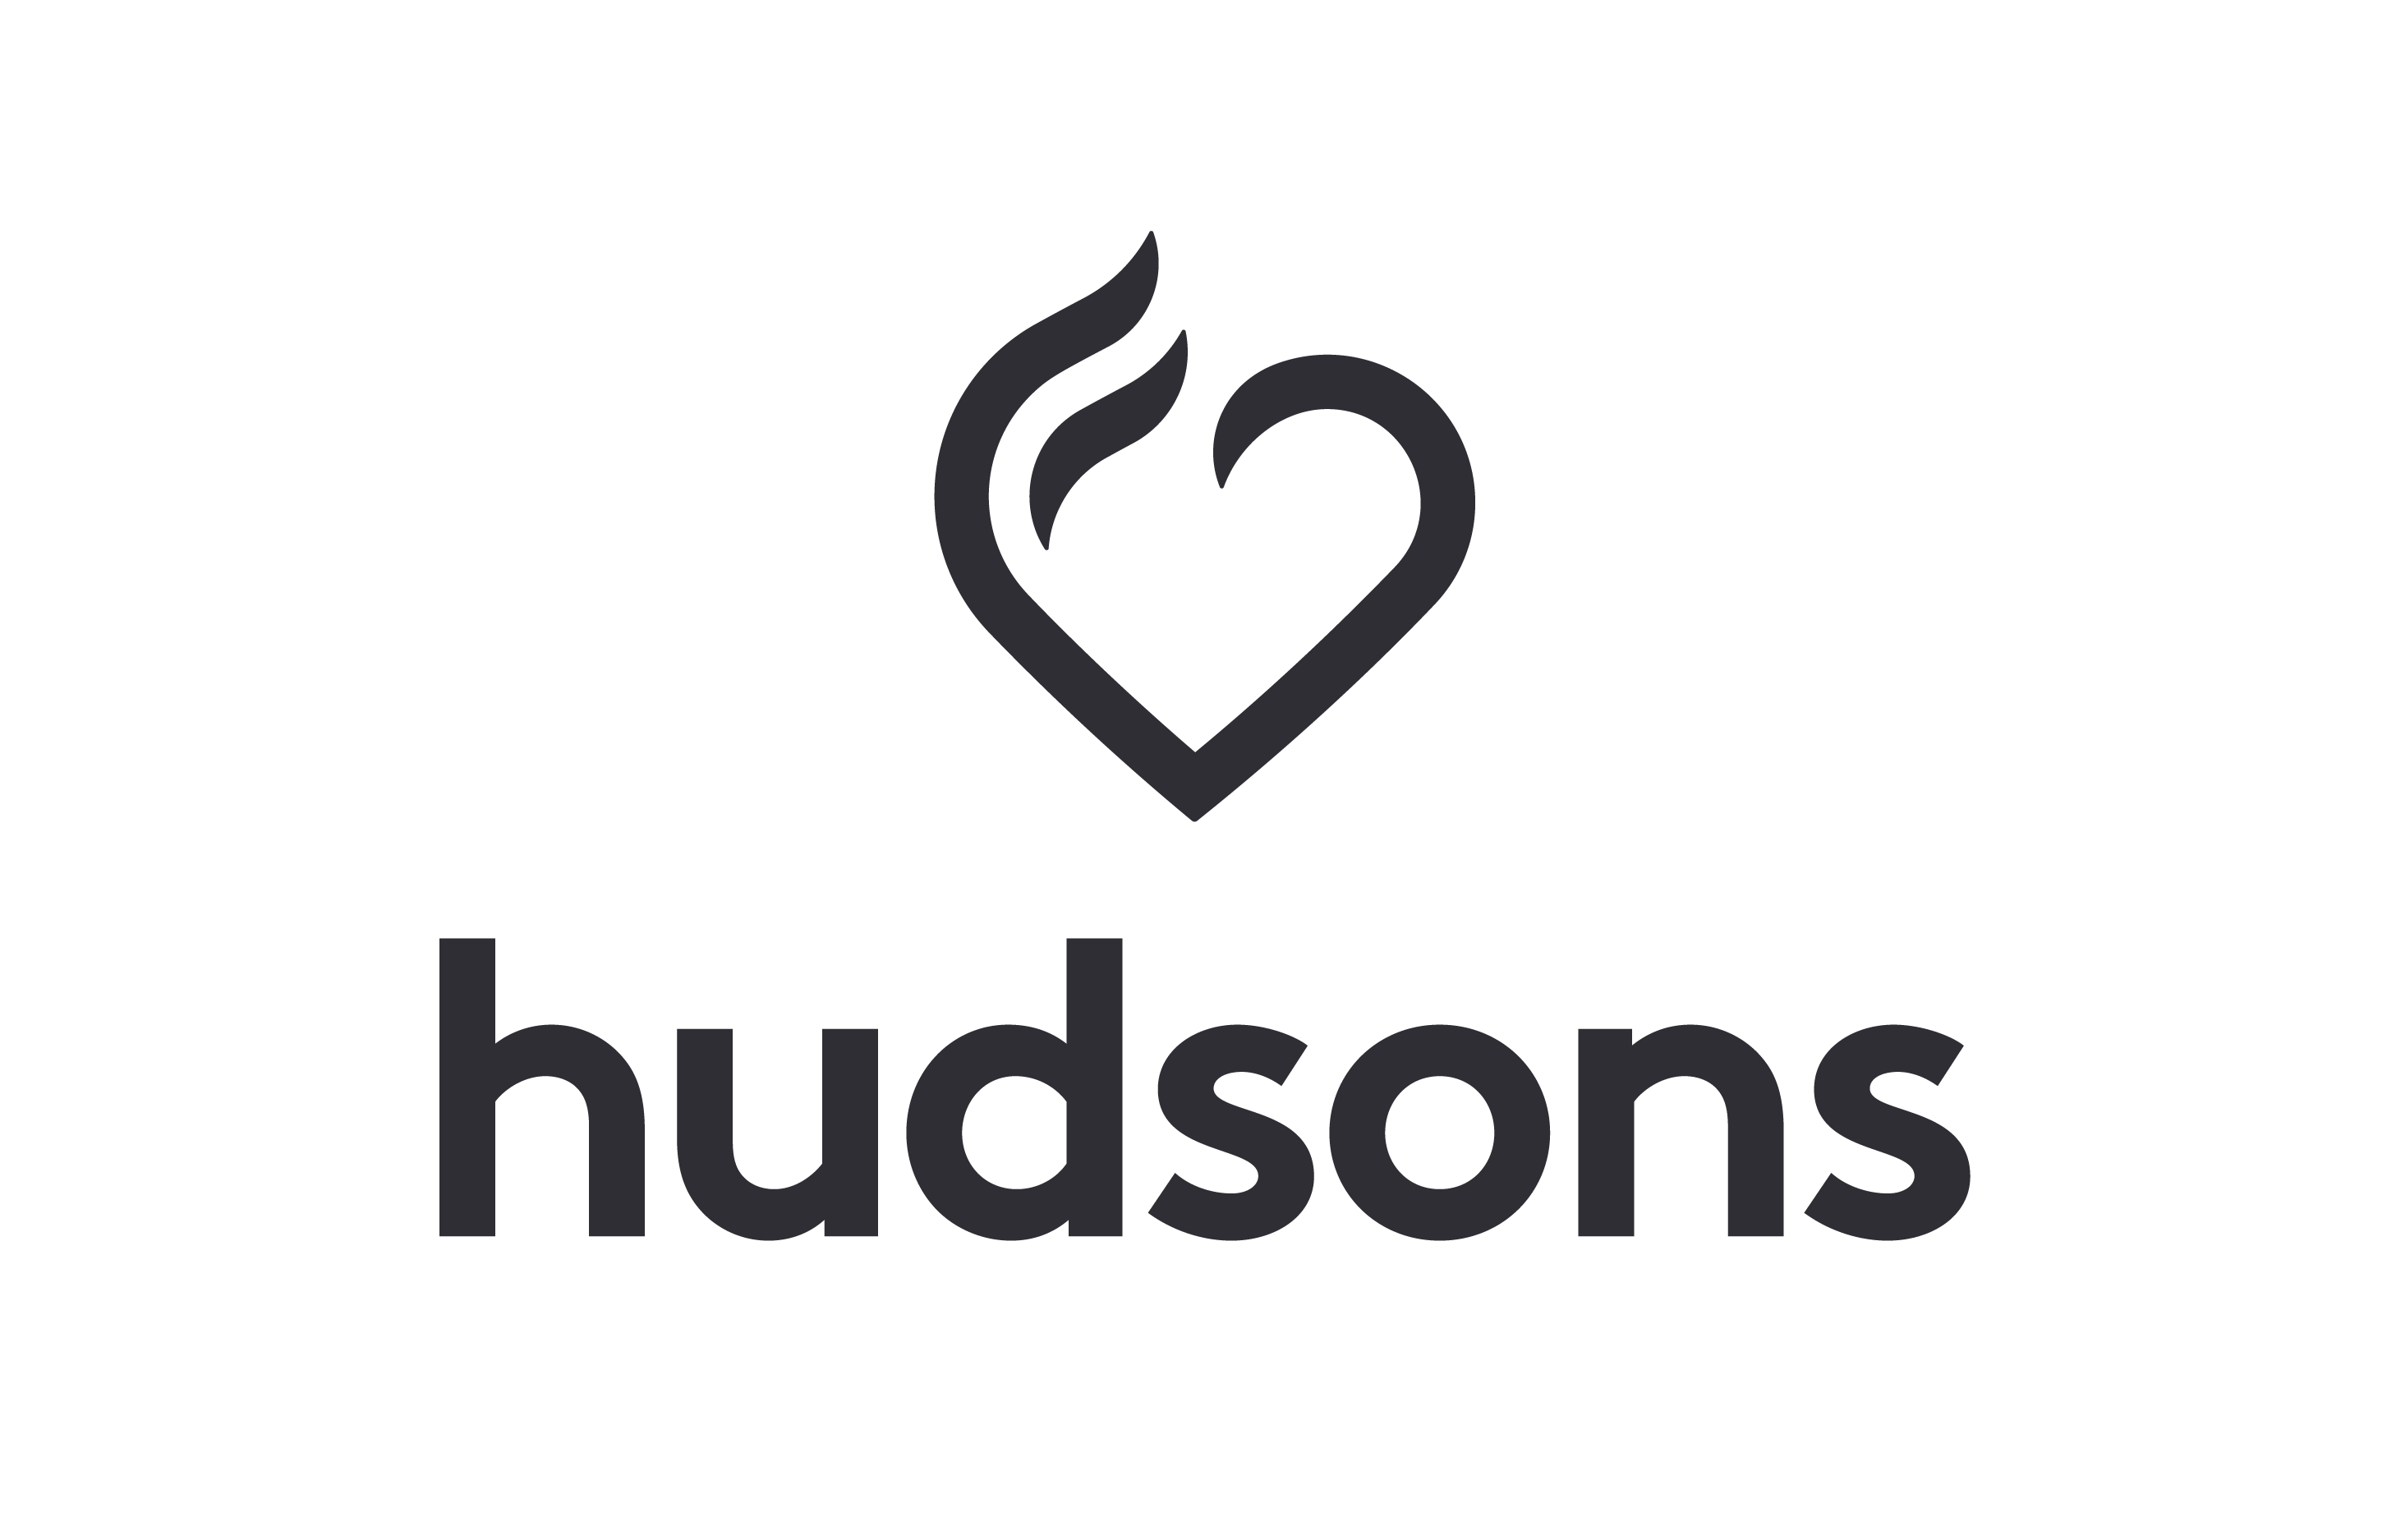 hudsons logos